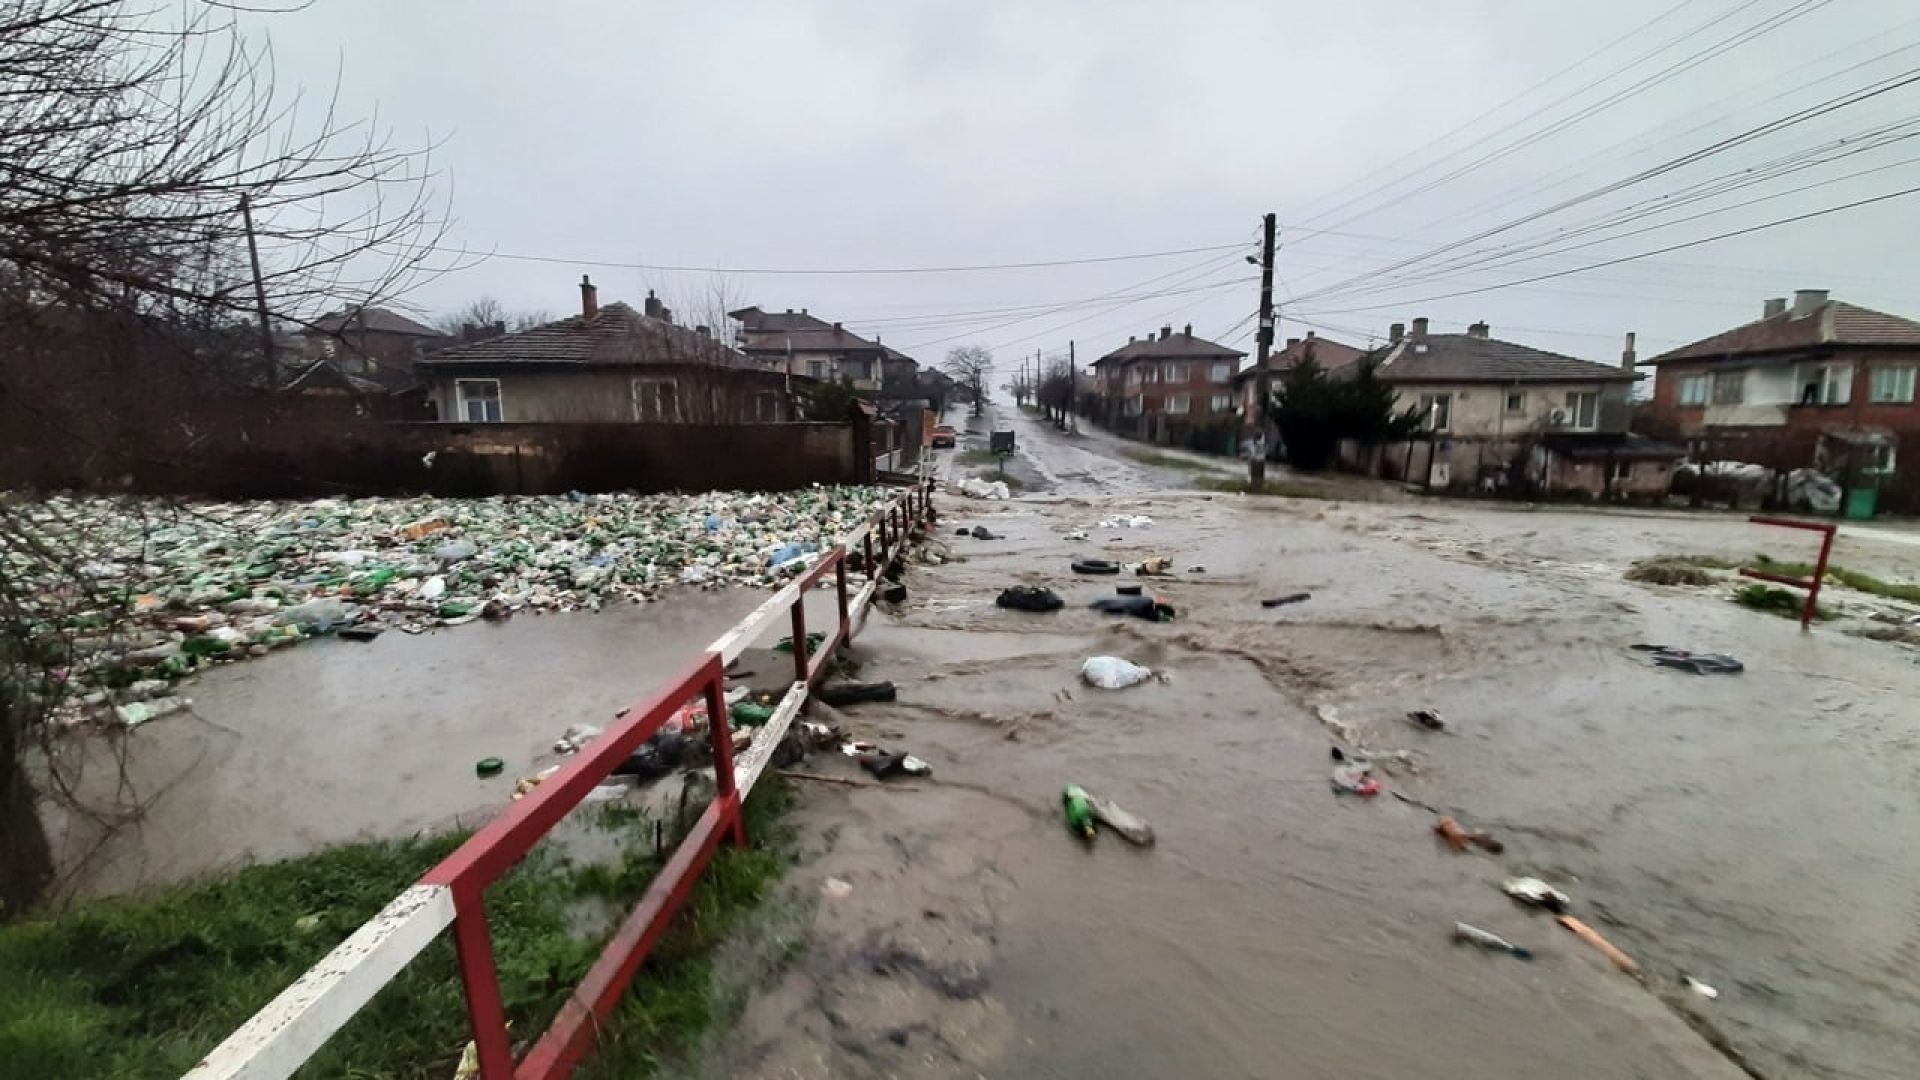 Канализация по европроект излива фекални води по улиците на Средец